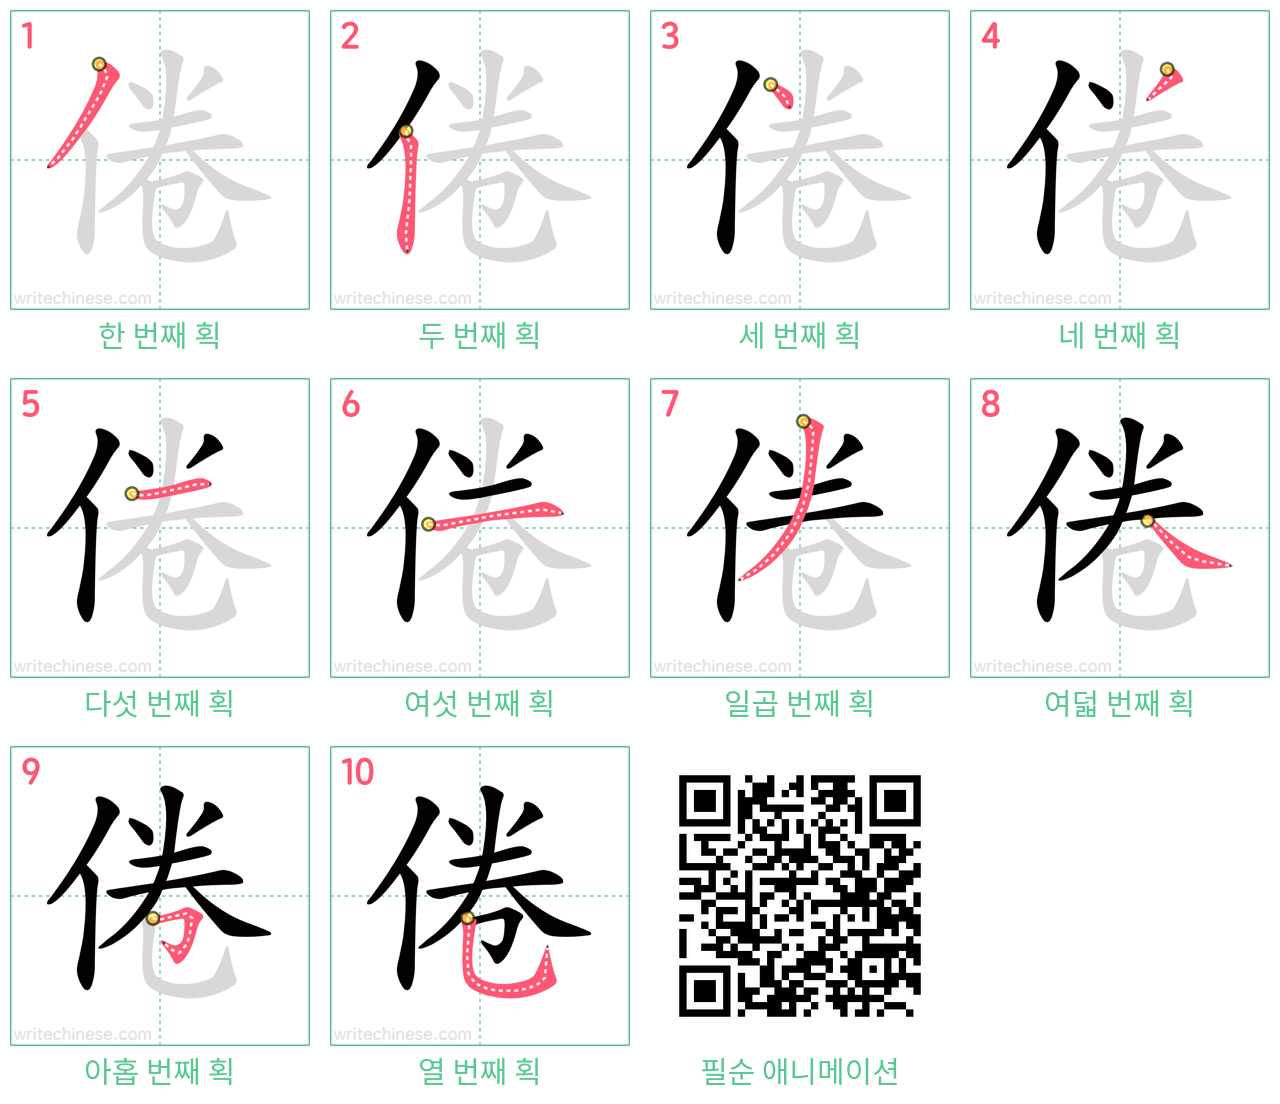 倦 step-by-step stroke order diagrams